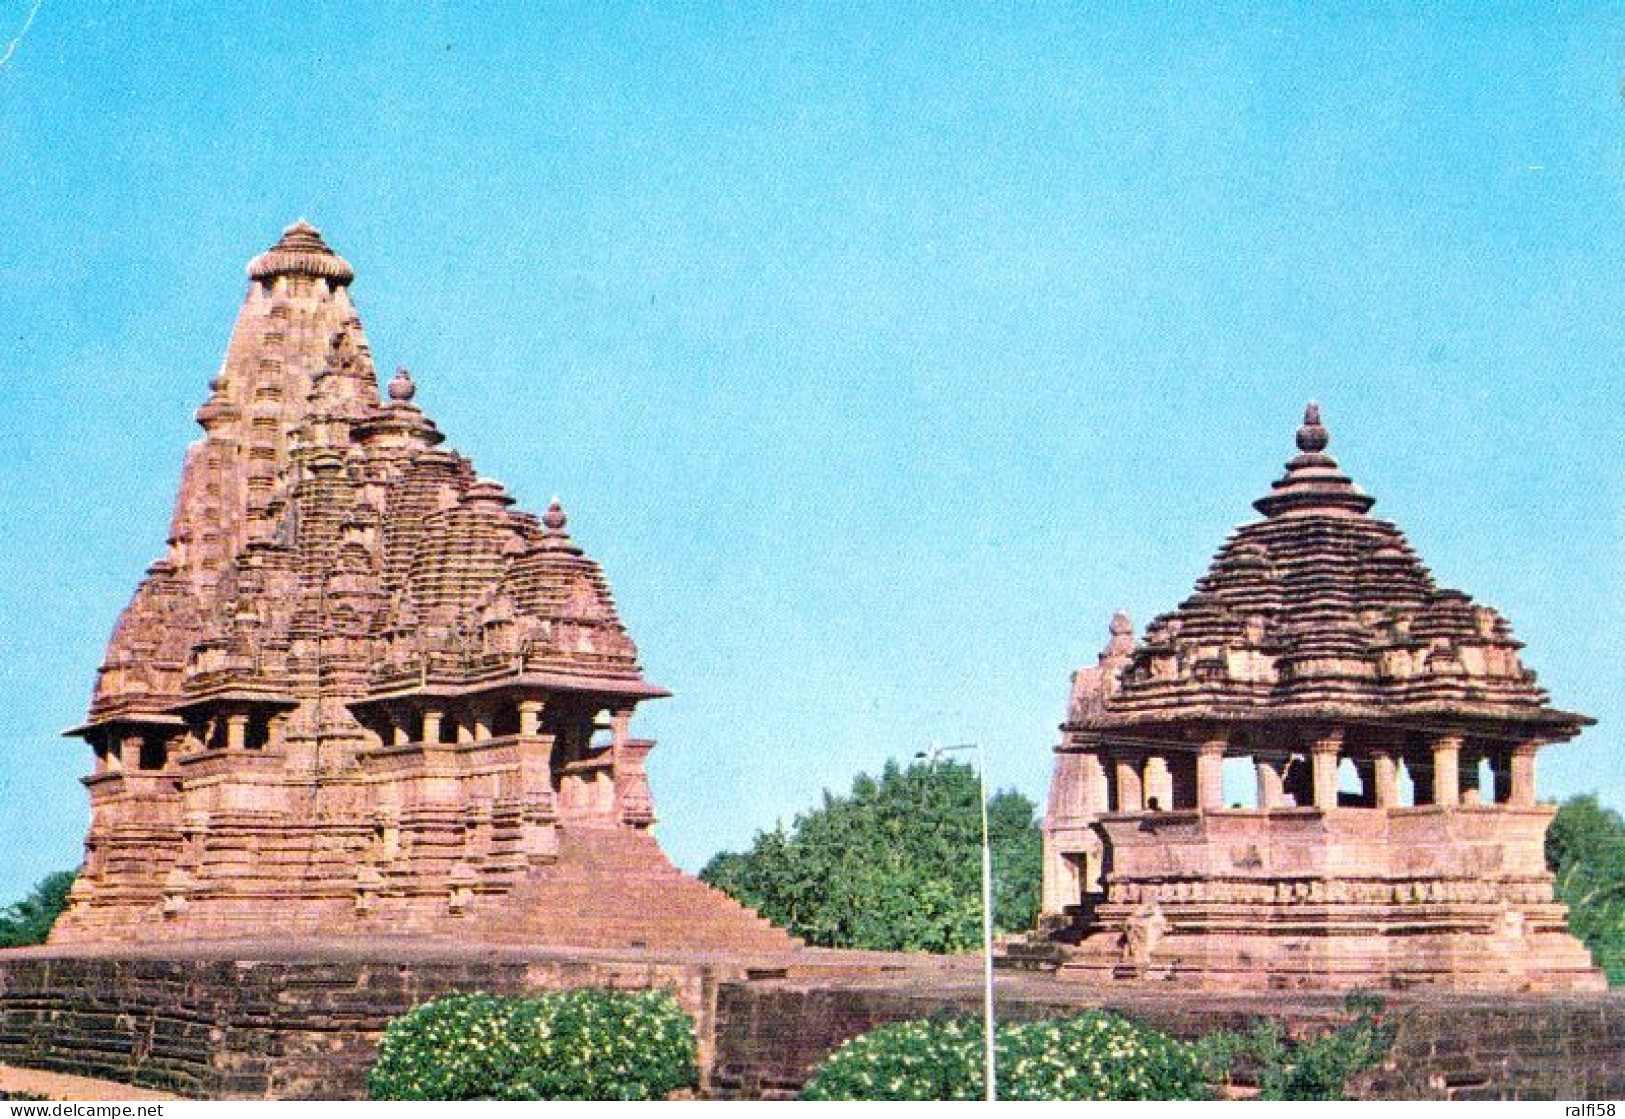 1 AK Indien * Die Tempel Jagdambi Und Nandi In Khajuraho 11./12. Jh. - Seit 1986 UNESCO Weltkulturerbe * - Inde